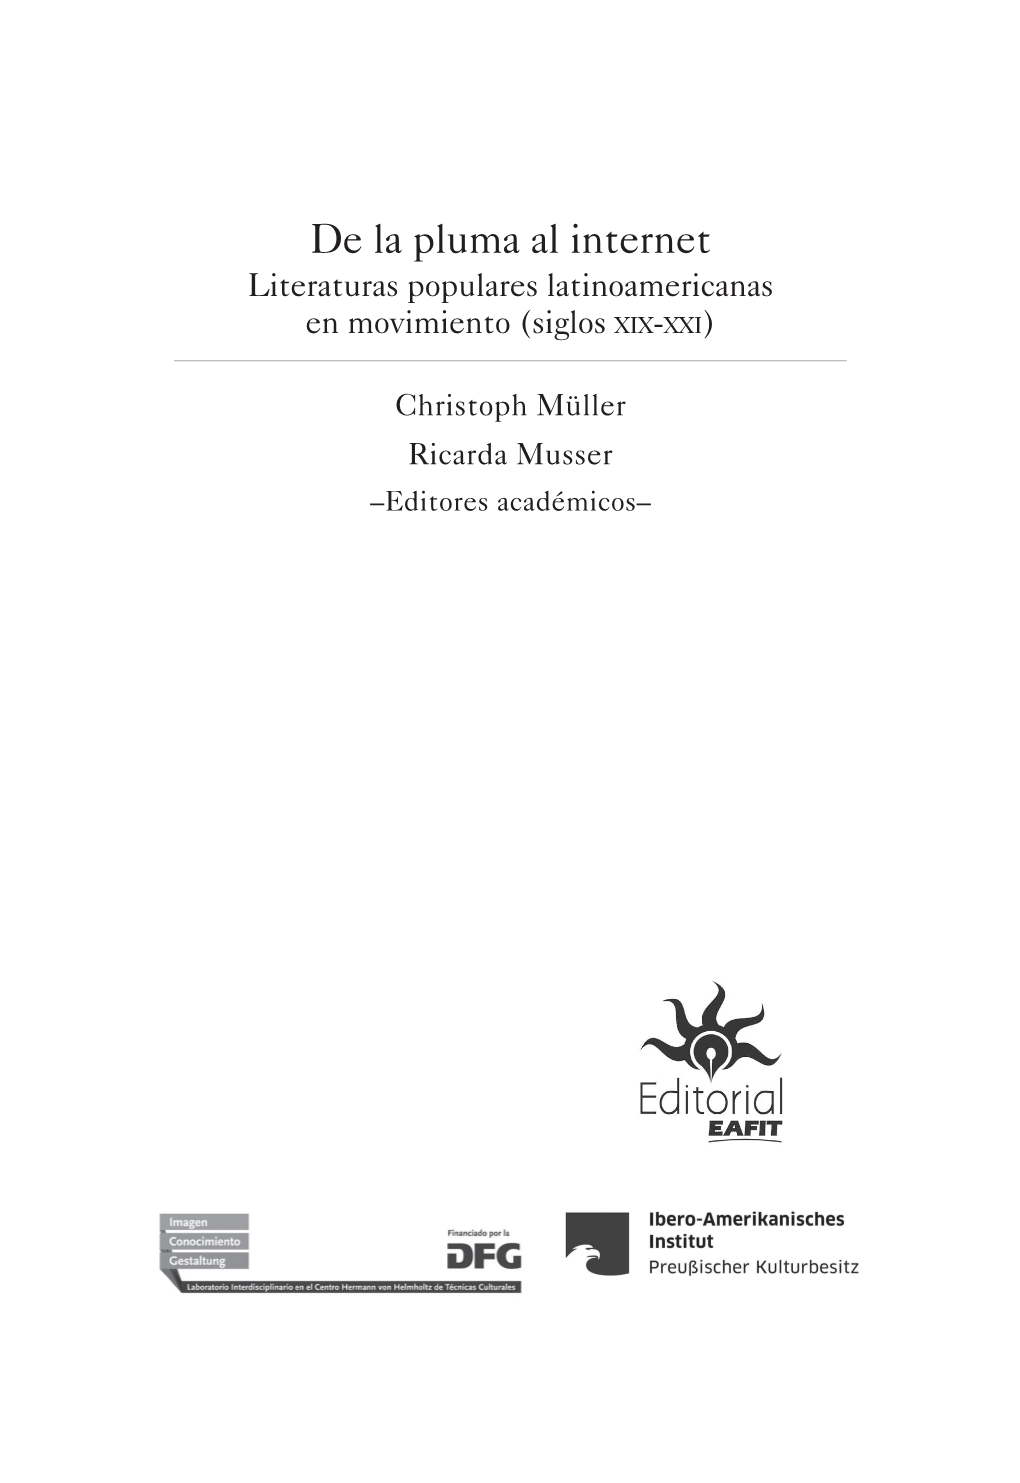 De La Pluma Al Internet Literaturas Populares Latinoamericanas En Movimiento (Siglos Xix-Xxi)